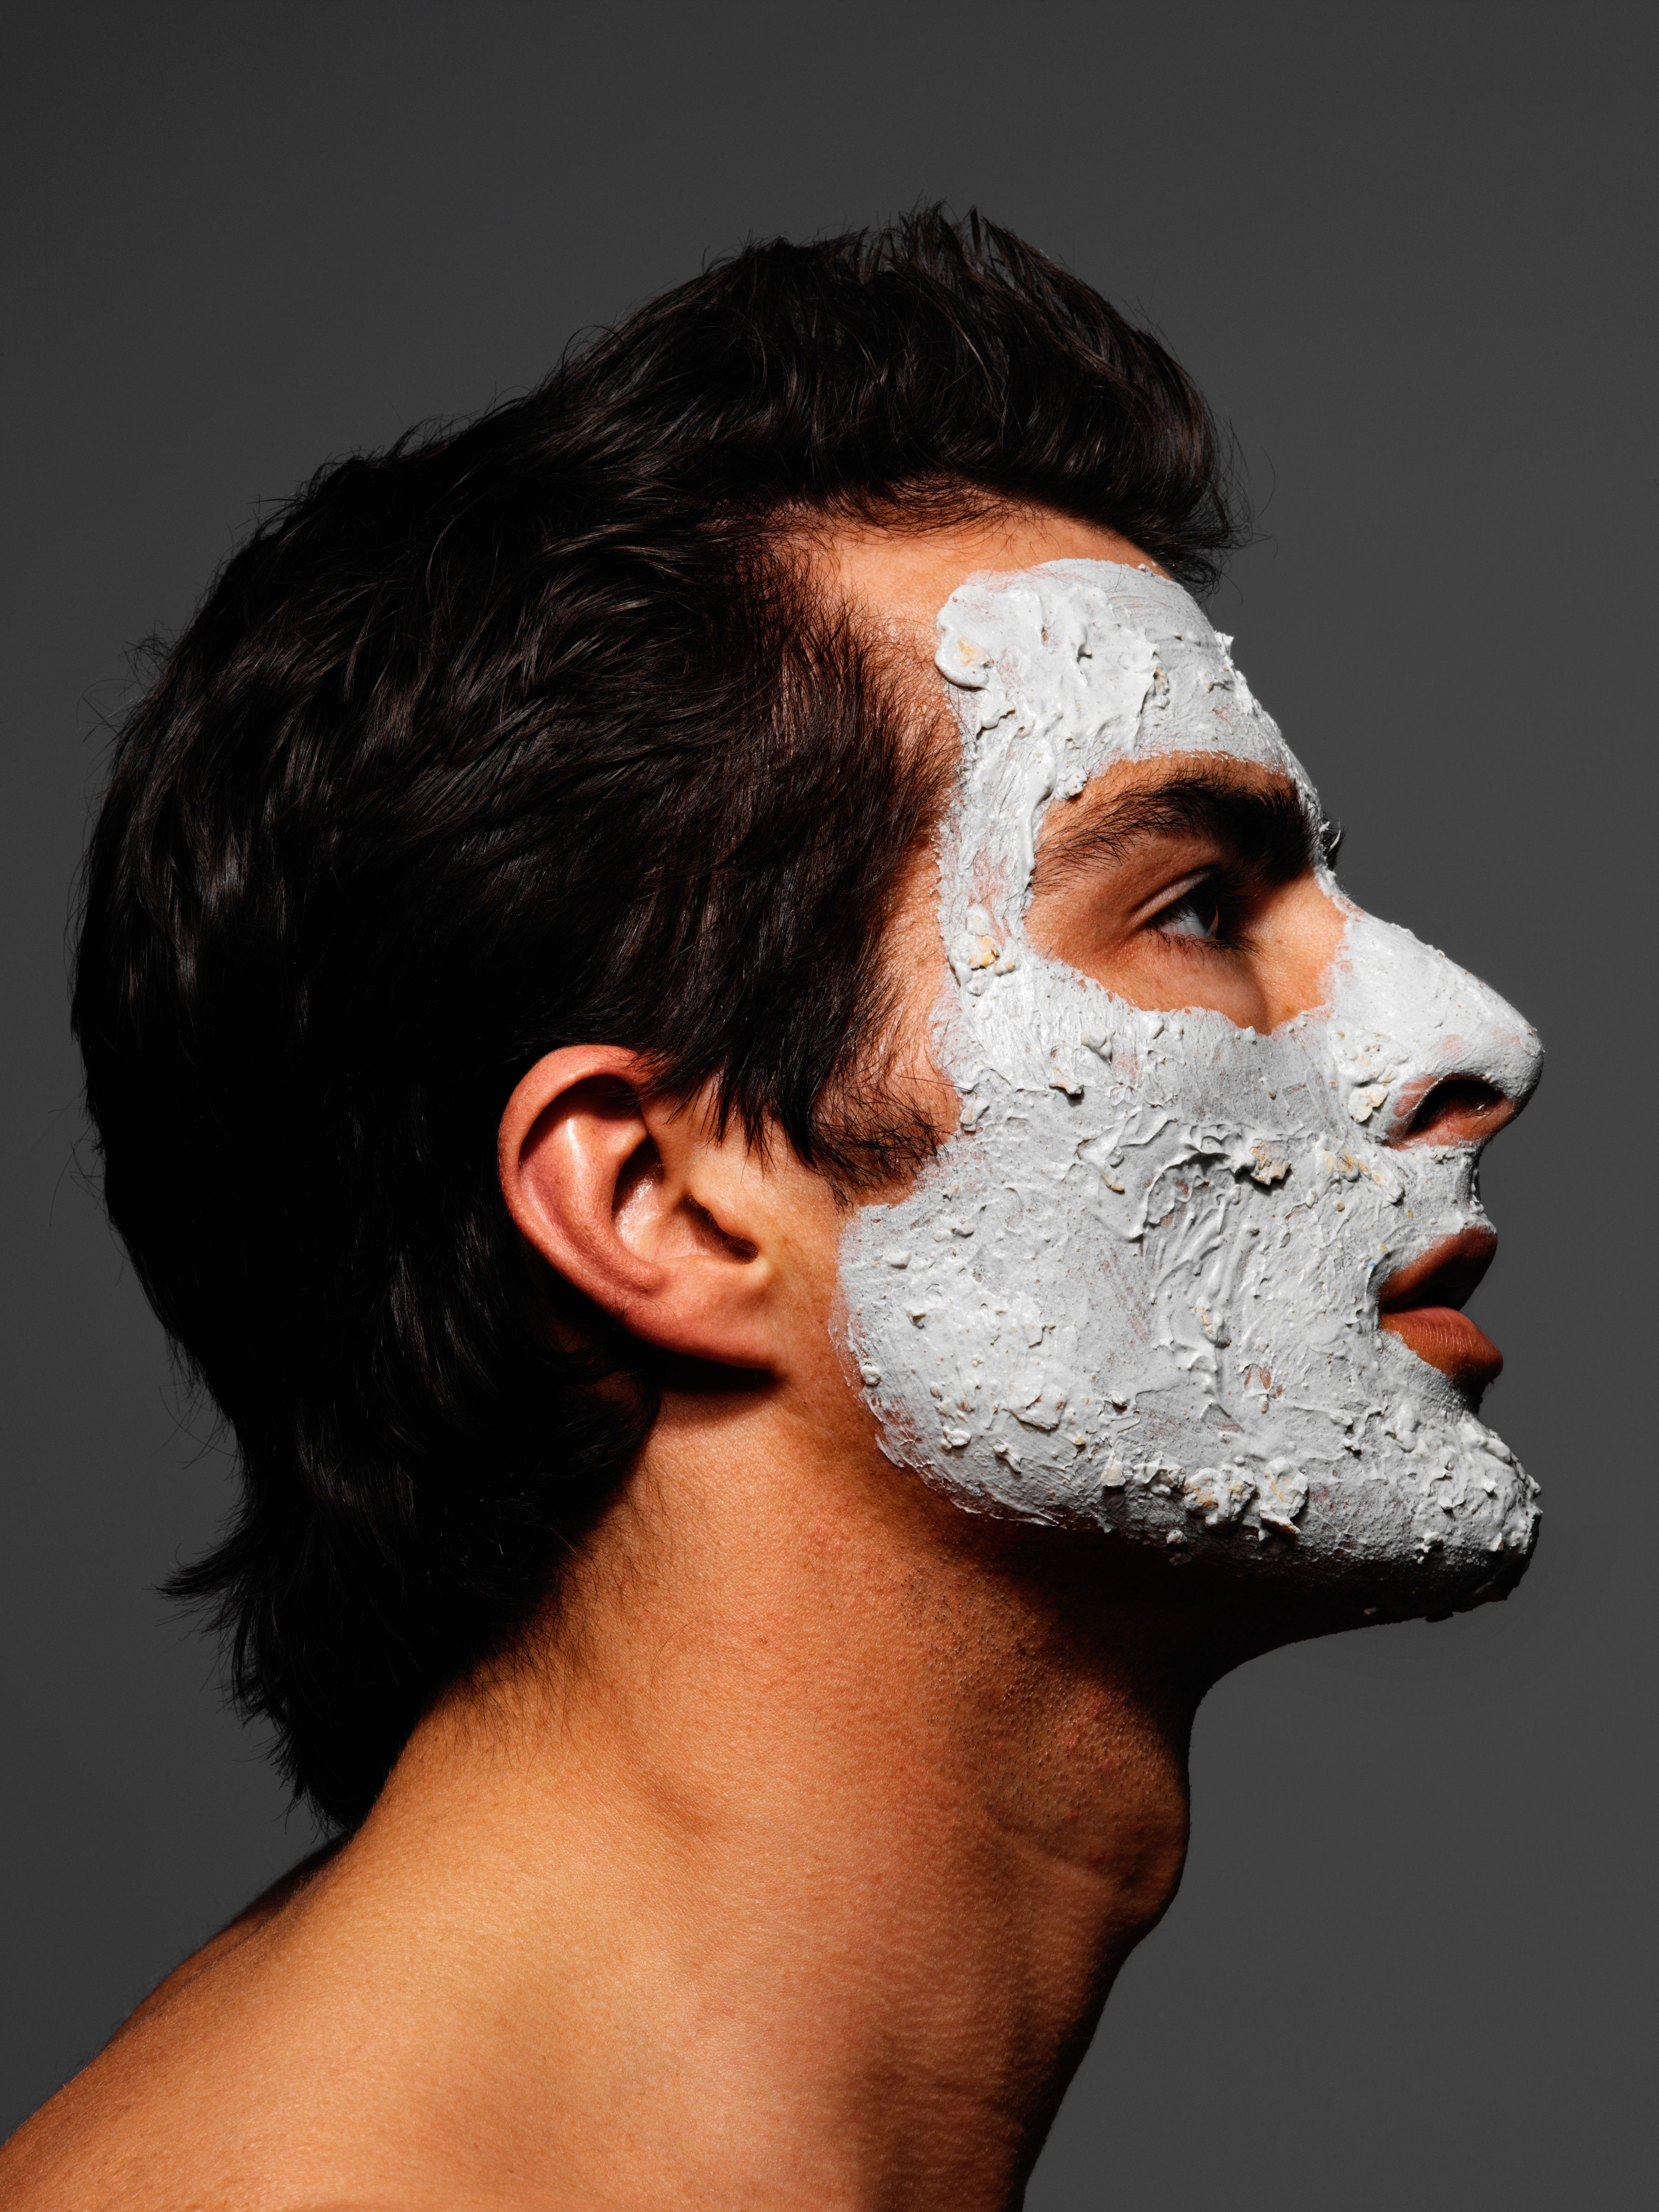 La mascarilla facial que debes usar según cómo esté tu piel